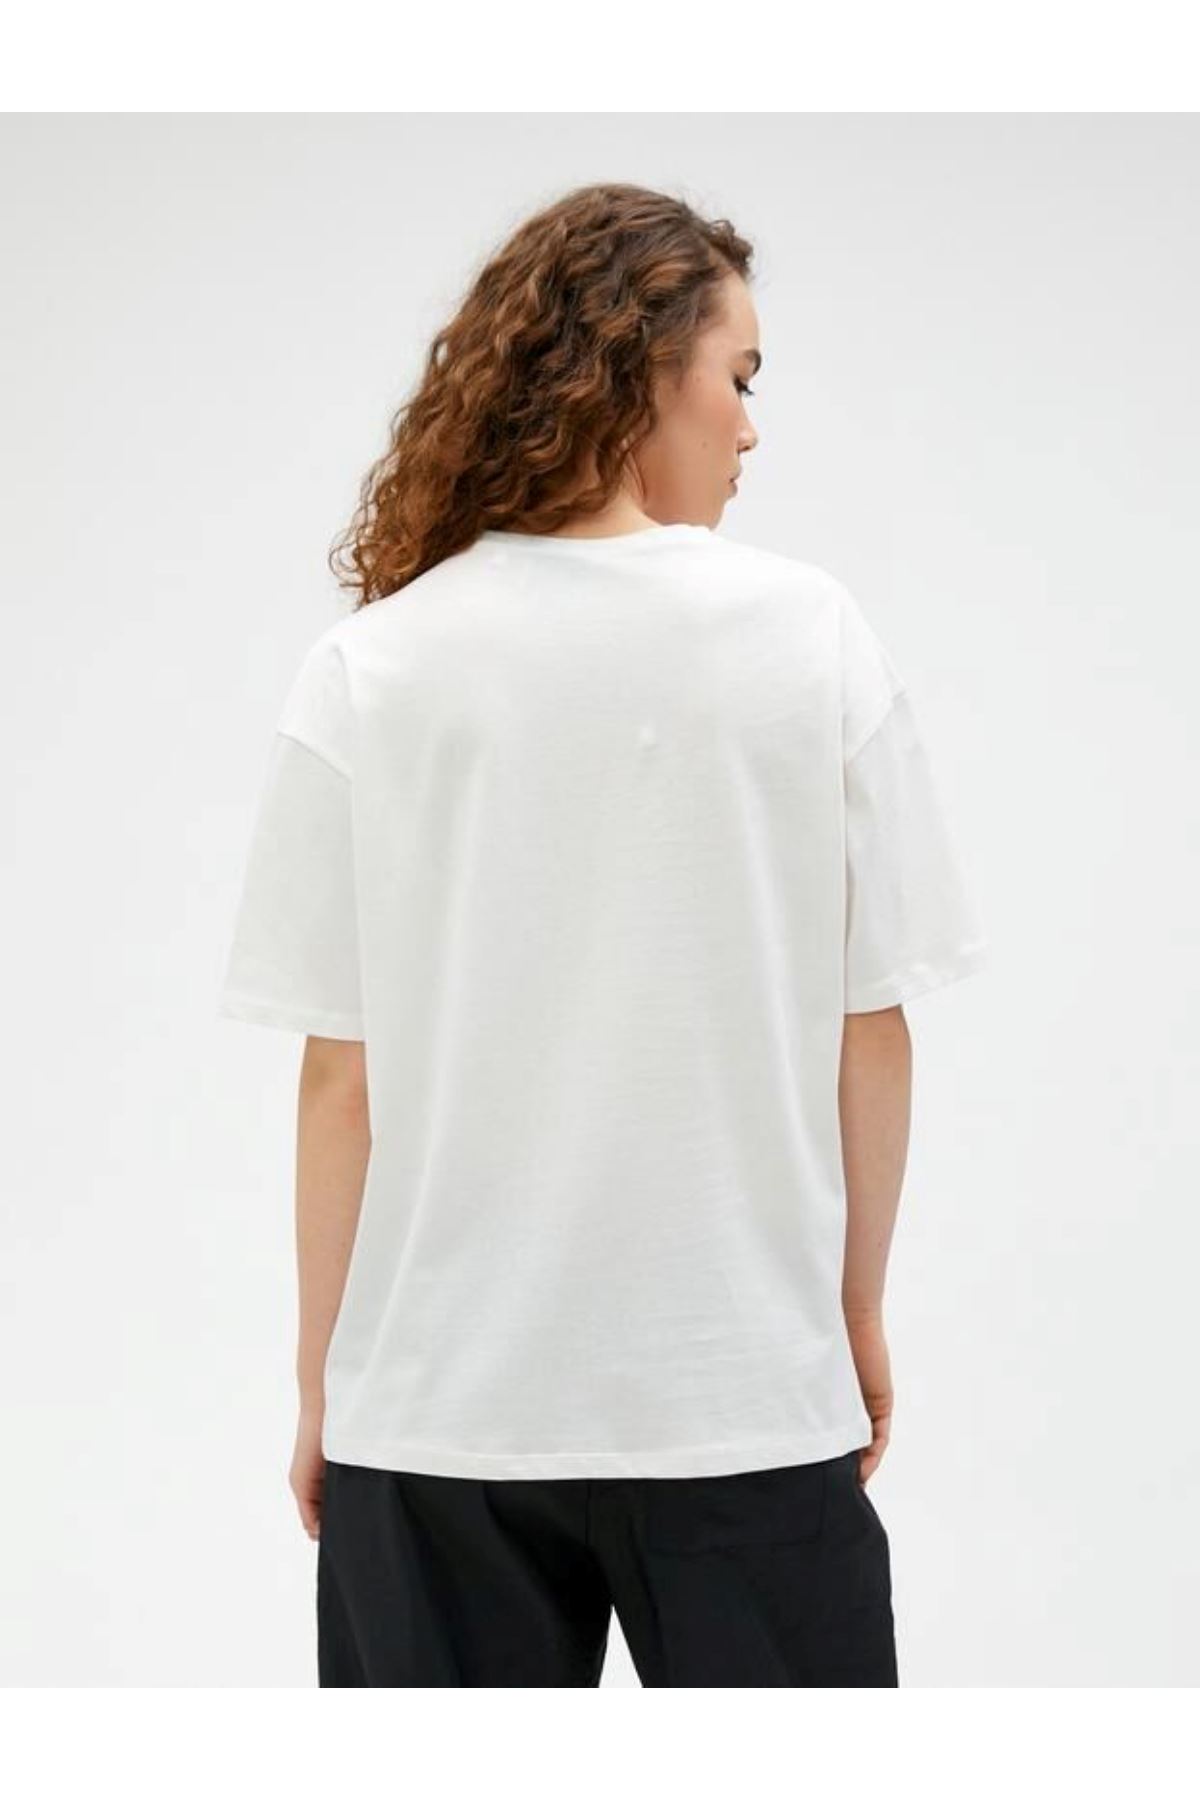 Koton Kadın Beyaz Tişört - 3SAL10600IK